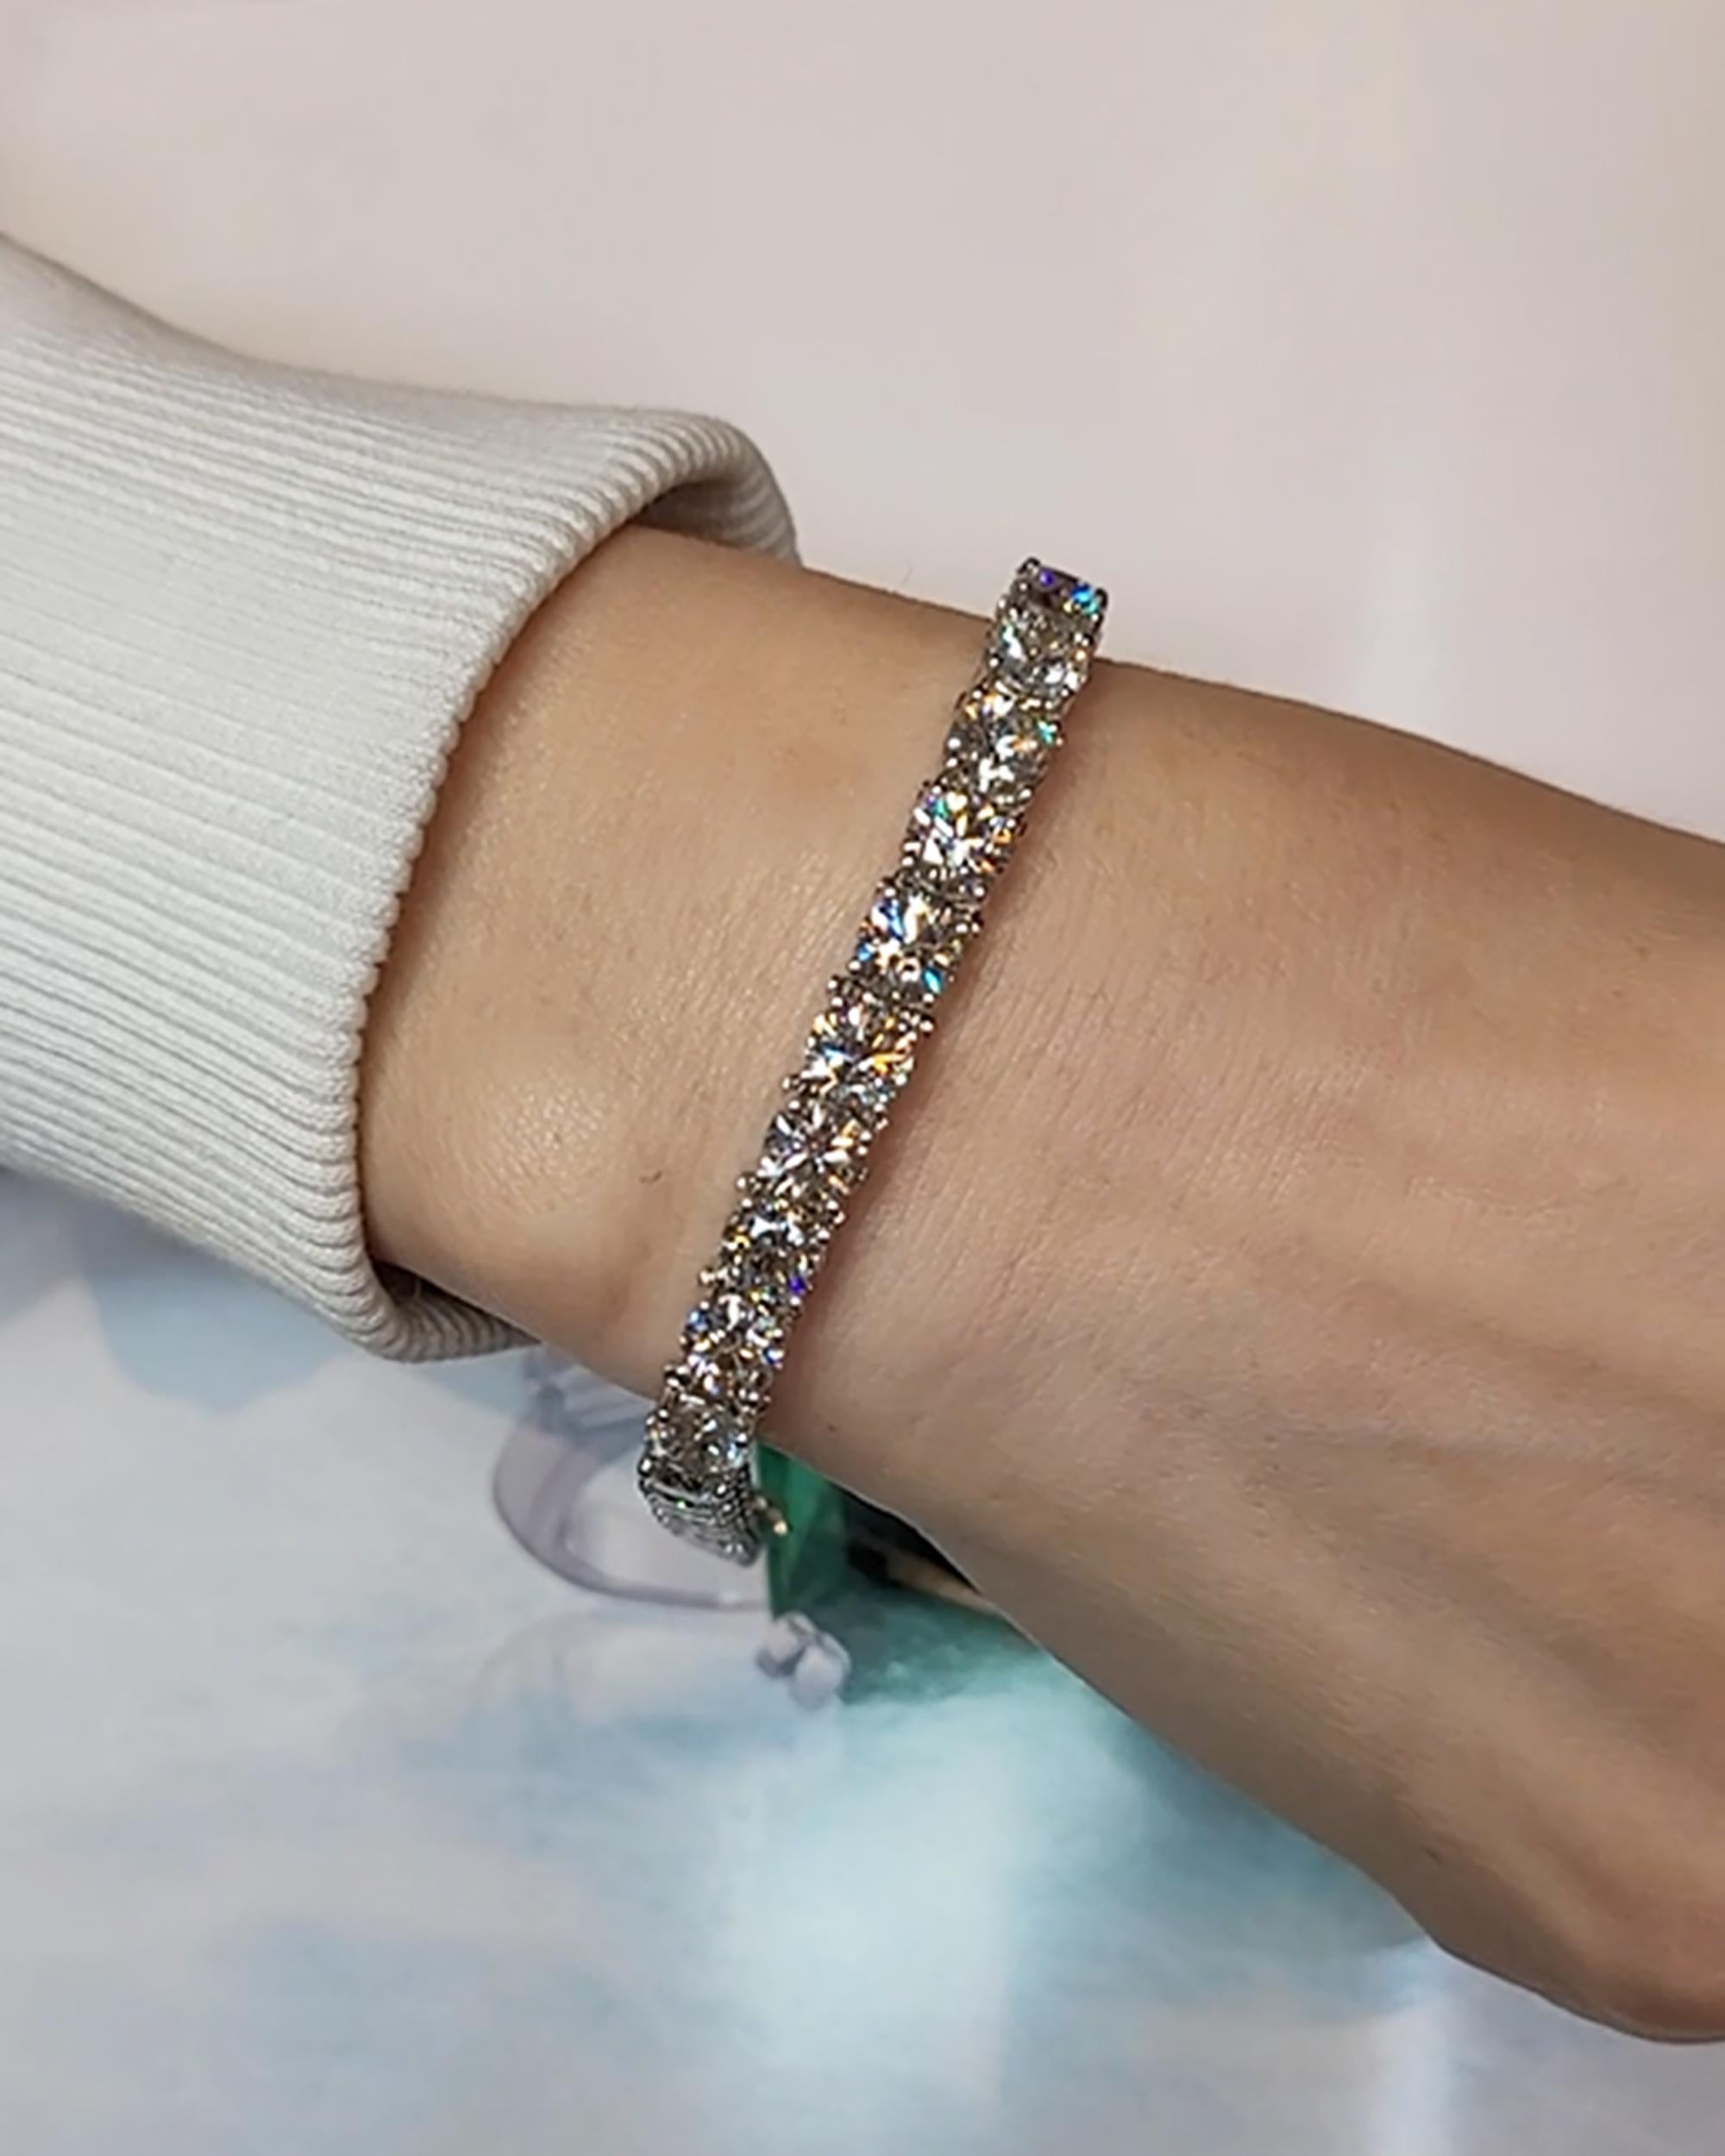 Dieses atemberaubende Armband ist mit 30 runden Diamanten verziert, von denen jeder ein Einzelgewicht von etwa 0,70 Karat aufweist, was insgesamt 21,05 Karat ergibt. Die Diamanten weisen eine raffinierte Farbe von I-J und eine Reinheit von VS-SI auf